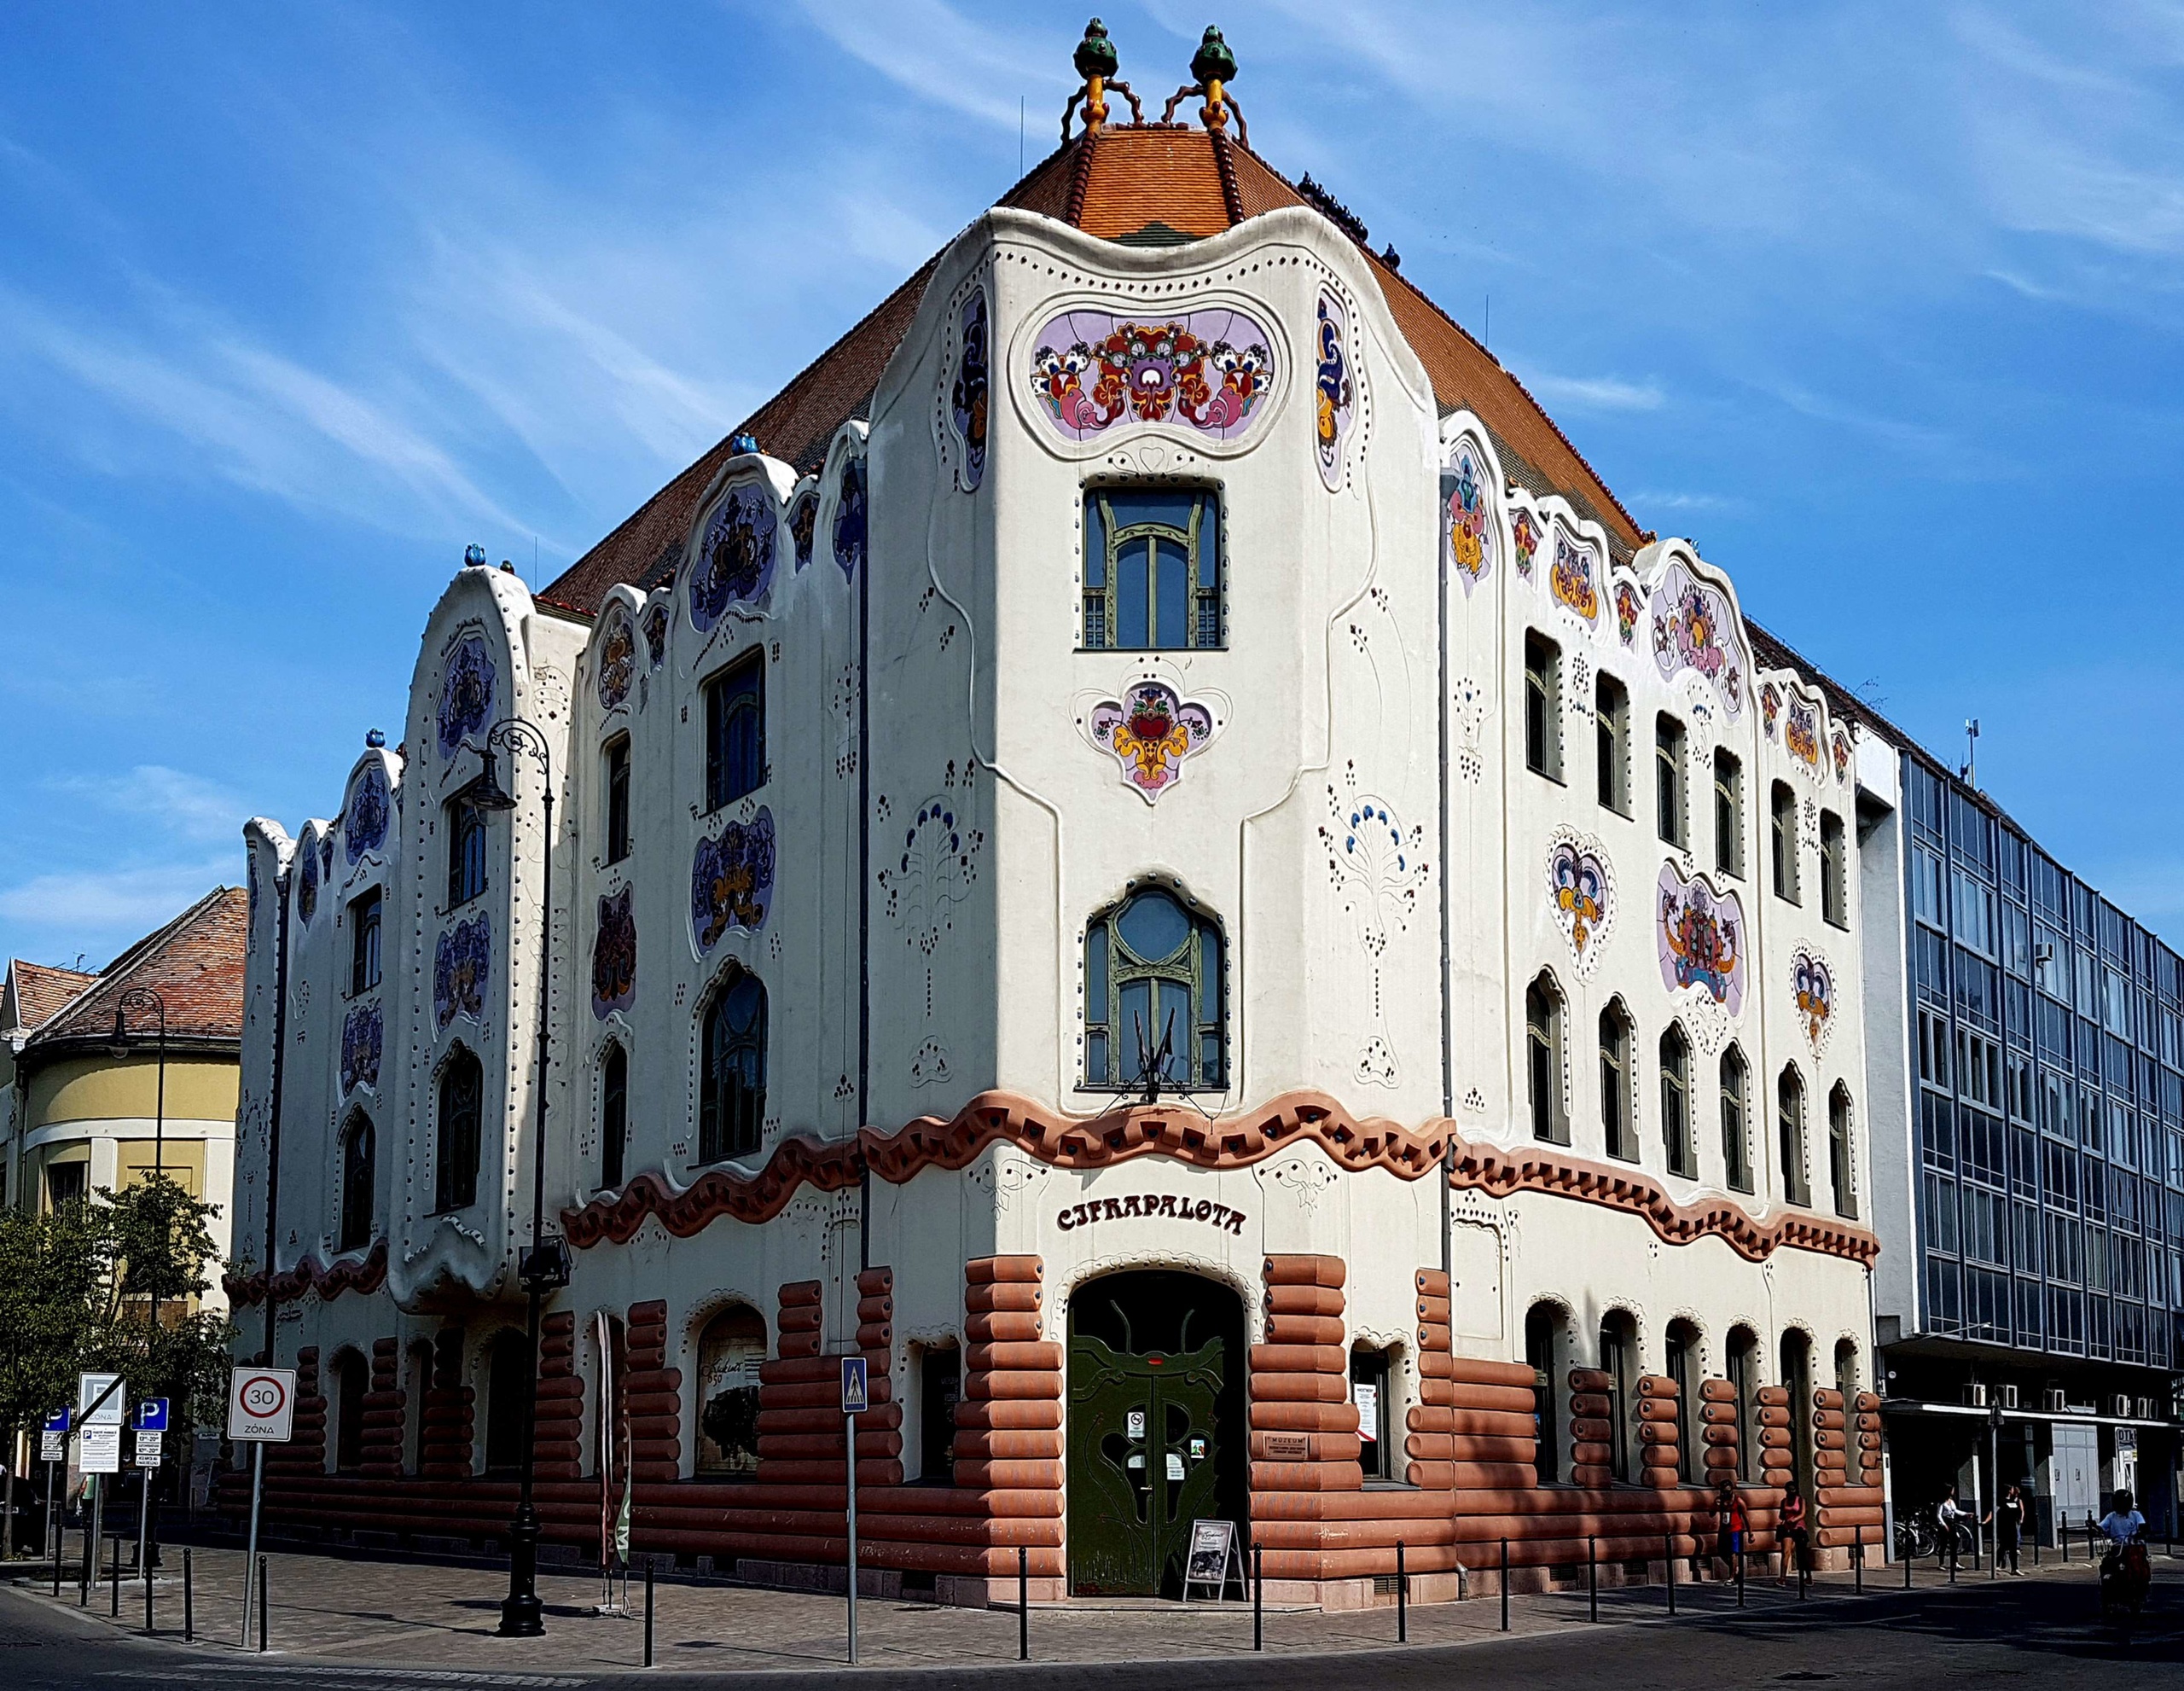 A Cifrapalota műemlék épülete a városközpontban, a Rákóczi út 1-ben. A magyar népmesék világát idéző díszítésű szecessziós épület Márkus Géza tervei alapján épült 1902-ben